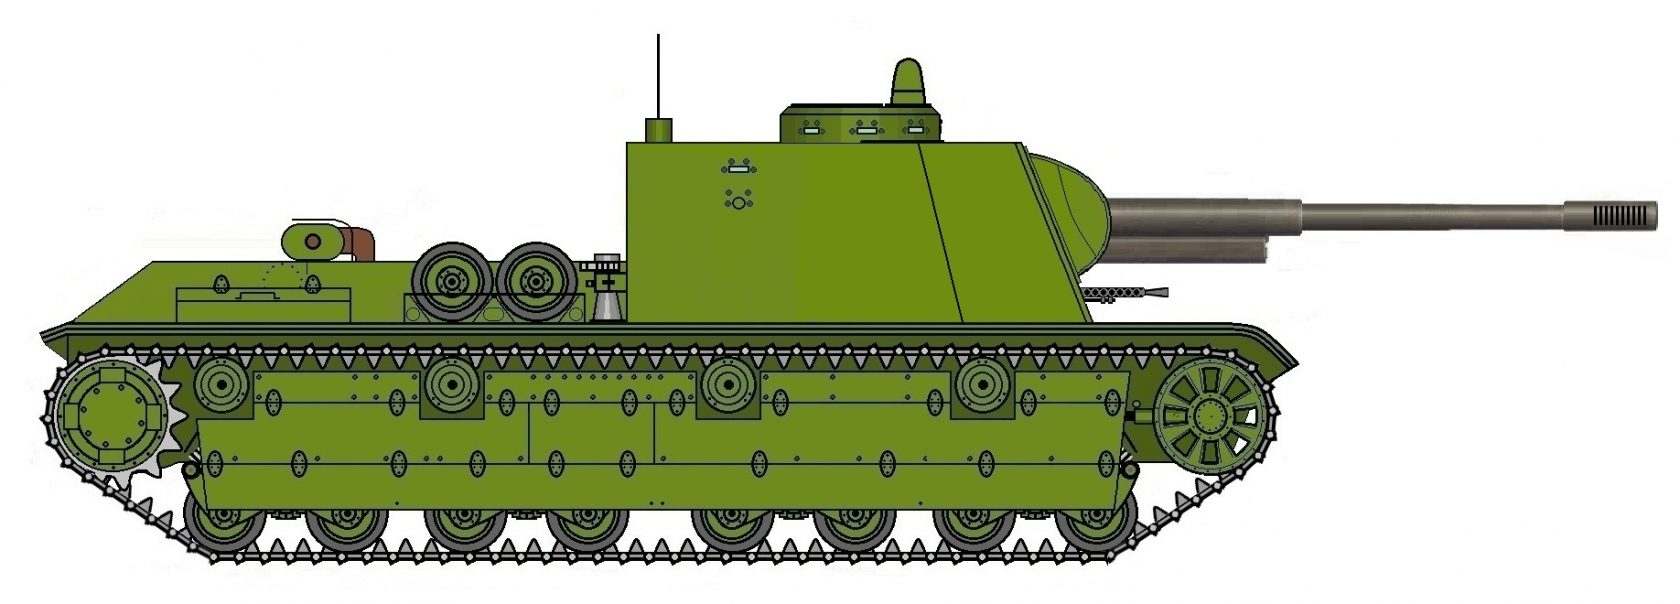 Танковая мощь СССР Тяжелый танк Т-28 Часть 3 (машины на базе Т-28)